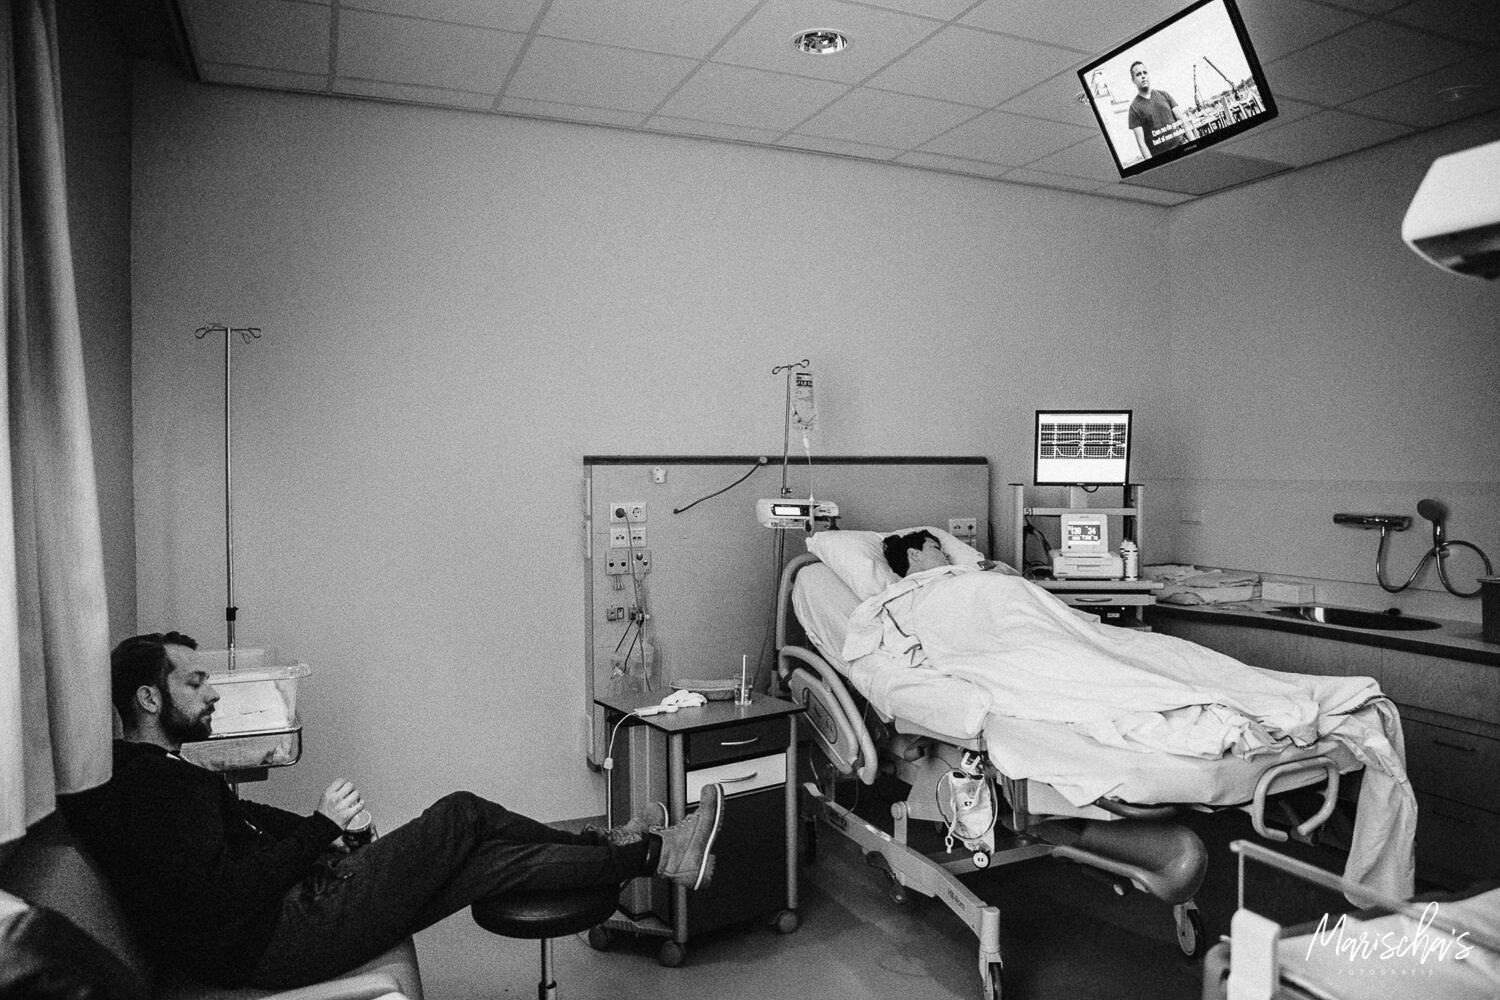 Geboortereportage van een bevallen mama in het ziekenhuis Roermond